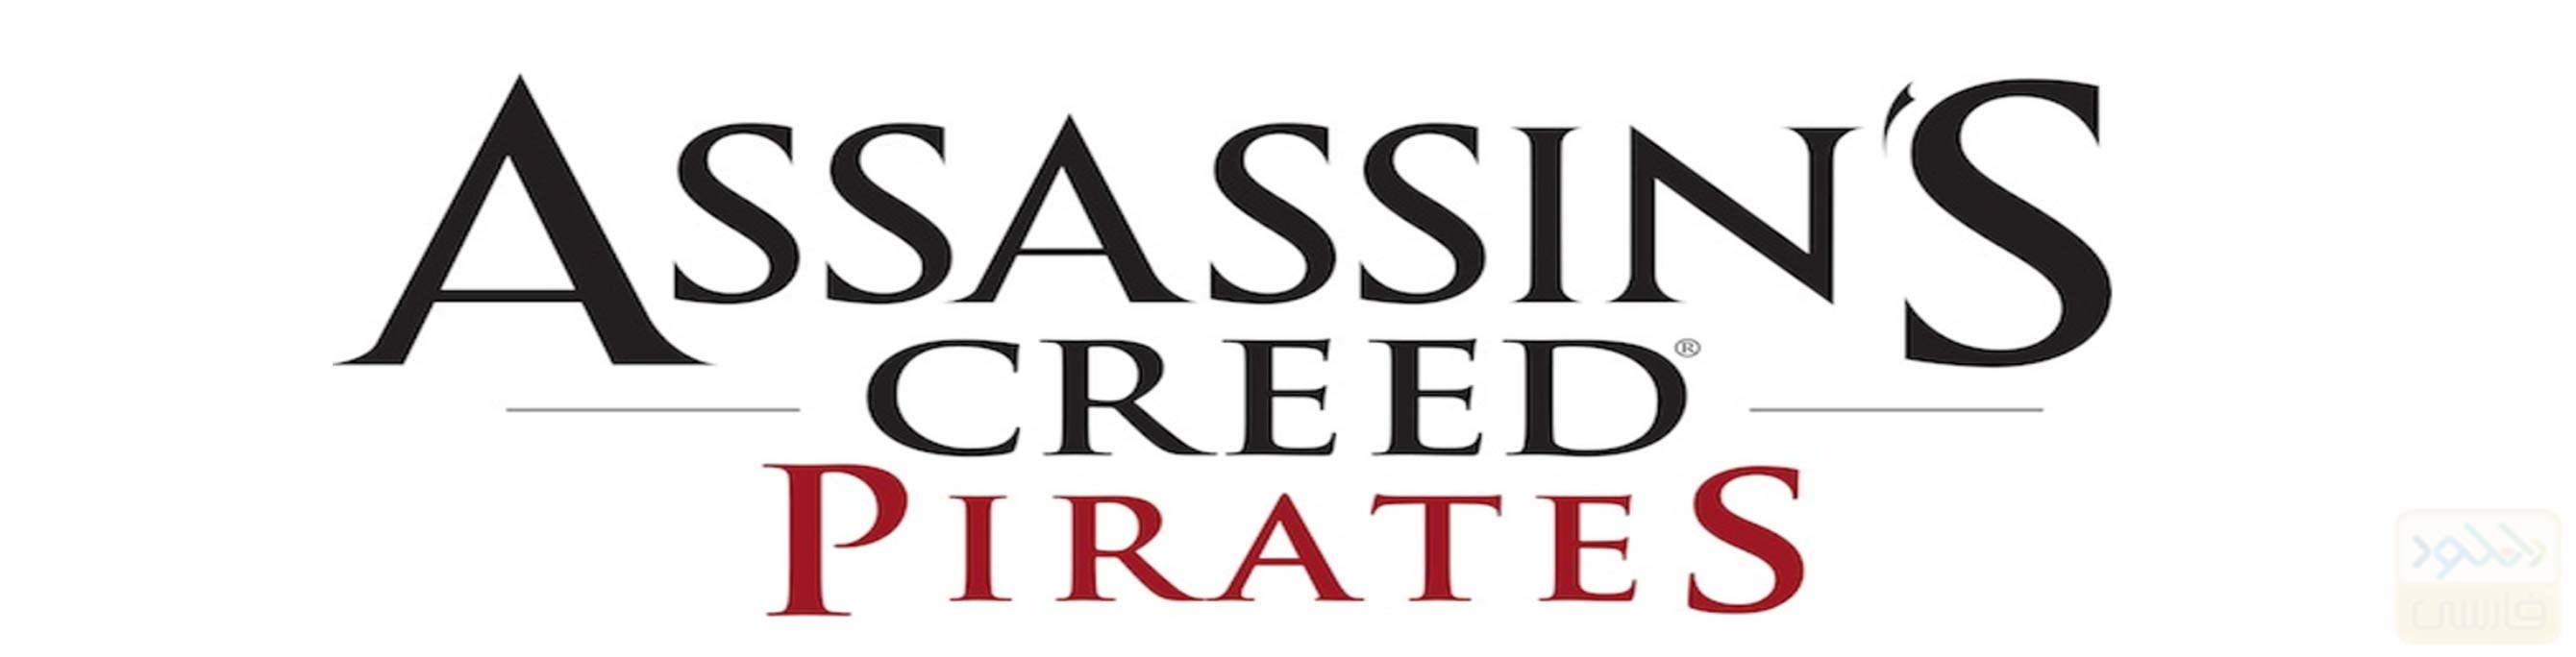 دانلود بازی Assassins Creed Pirates 2.9.1 + Mod برای اندروید